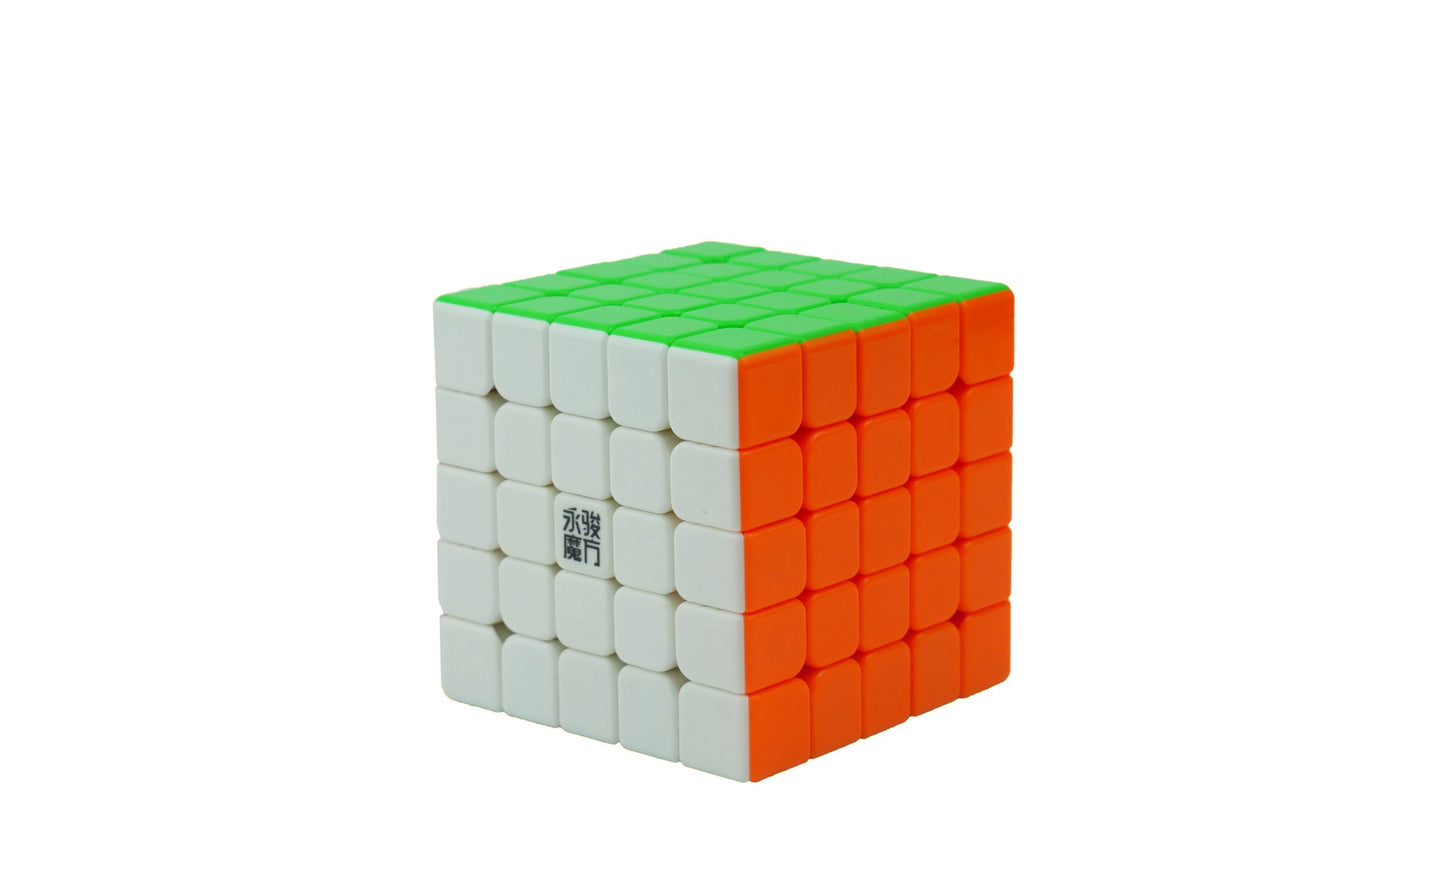 YJ Zhilong Mini 5x5 MZauberwŸrfel Rubik WŸrfel Speedcube